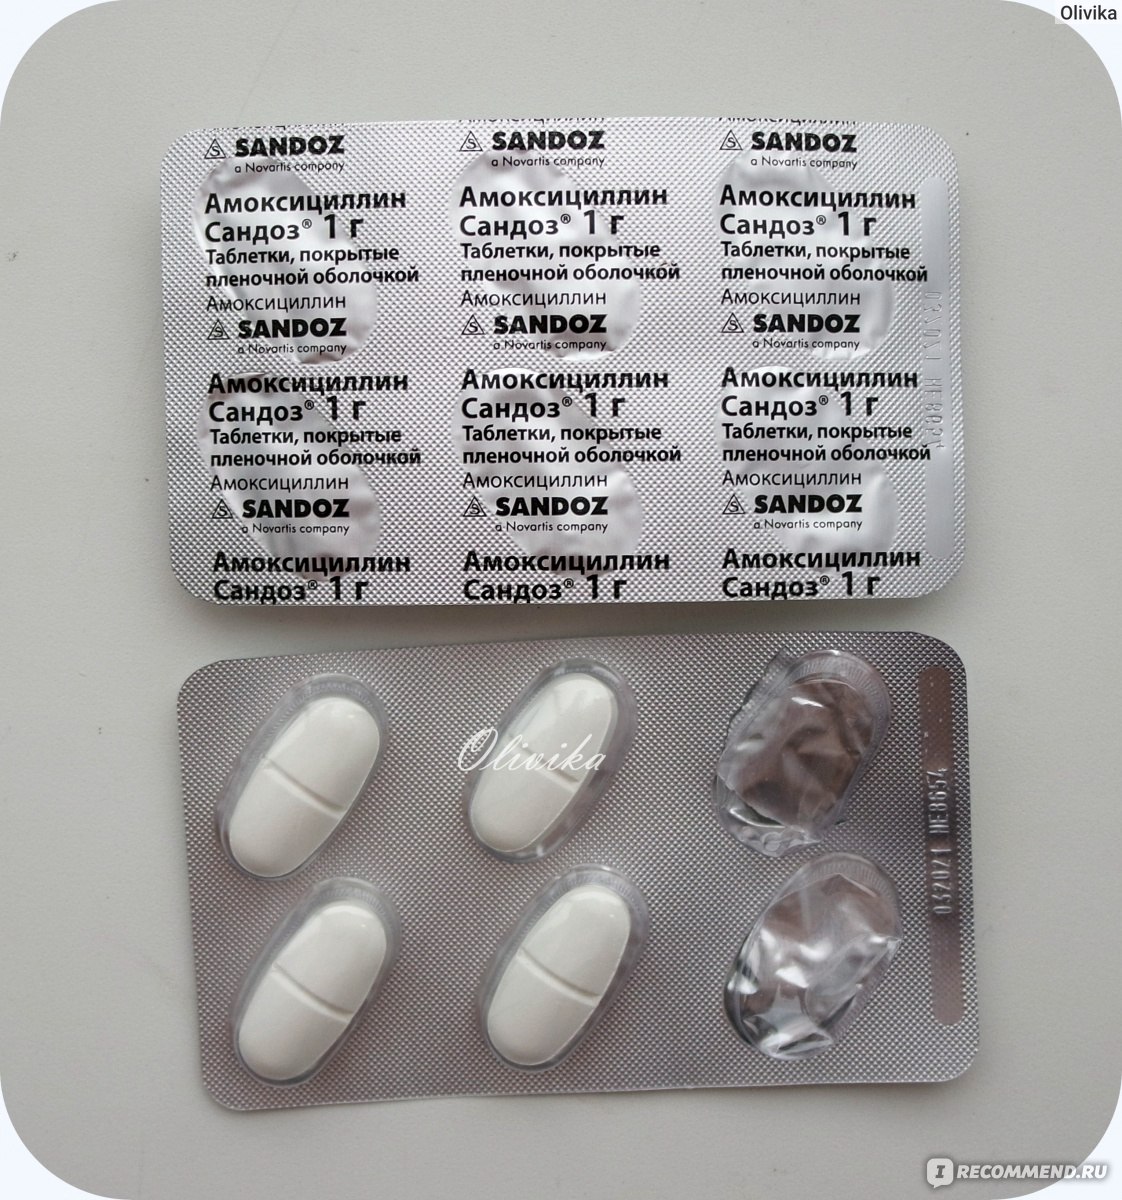 Антибиотики препараты недорогие но эффективные. Антибиотики в таблетках. Название антибиотиков в таблетках. Сильные антибиотики в таблетках названия. Антибиотики таблетки капсулы.